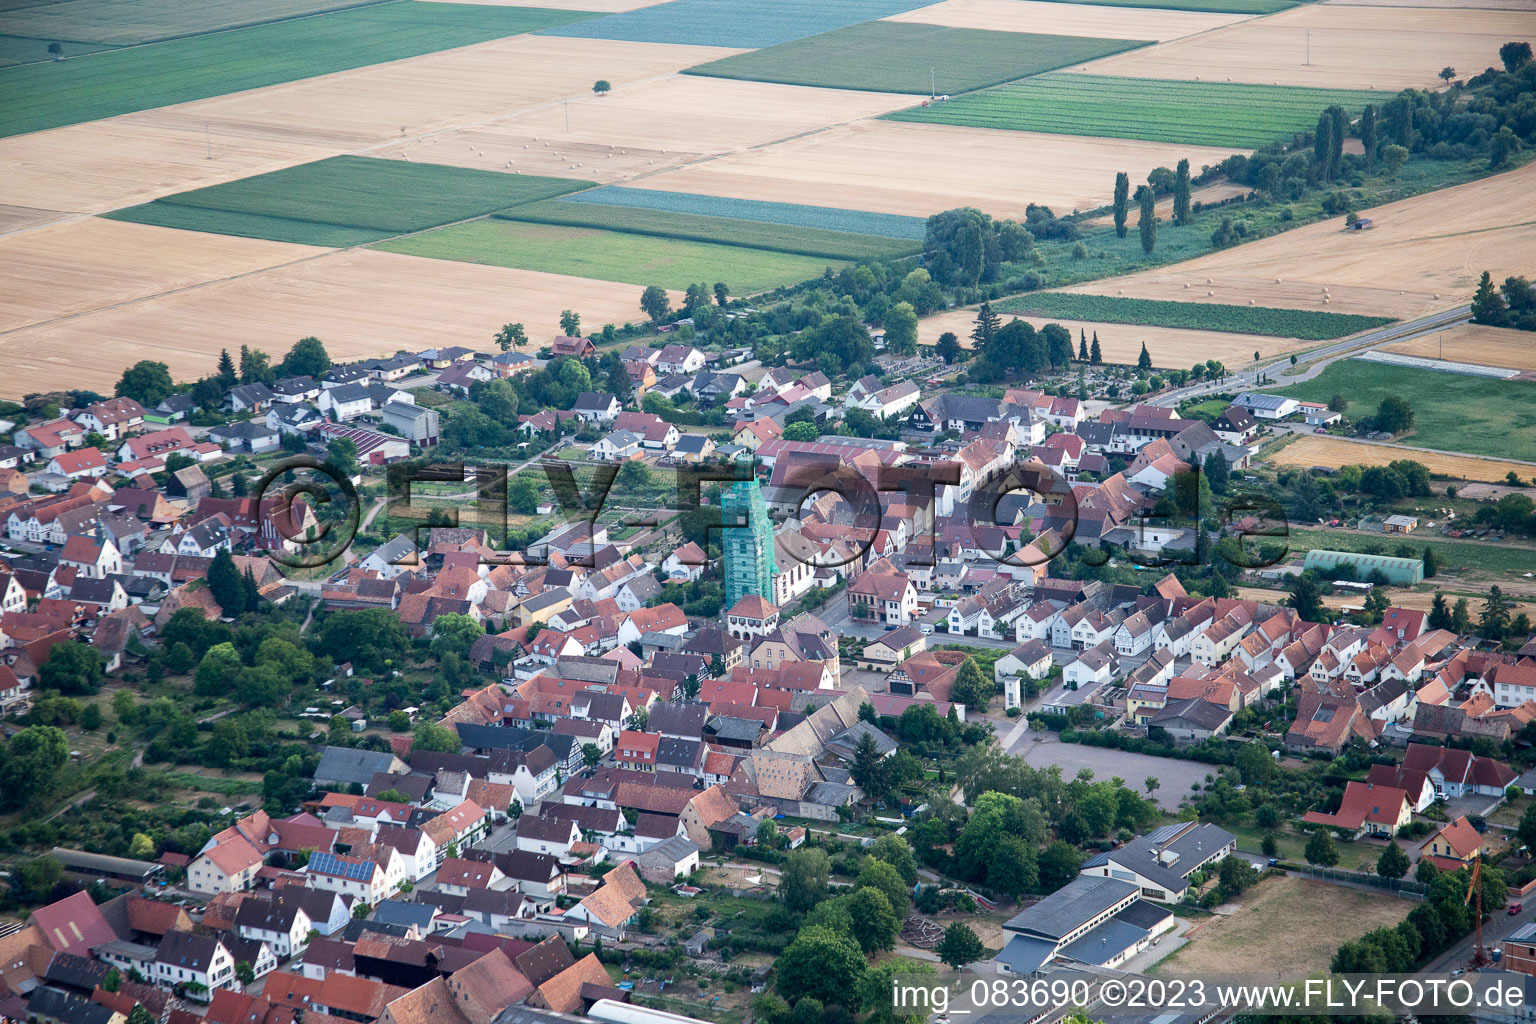 Luftbild von Ottersheim, katholische Kirche eingerüstet von Leidner GmbH Gerüstbau, Landau in Ottersheim bei Landau im Bundesland Rheinland-Pfalz, Deutschland